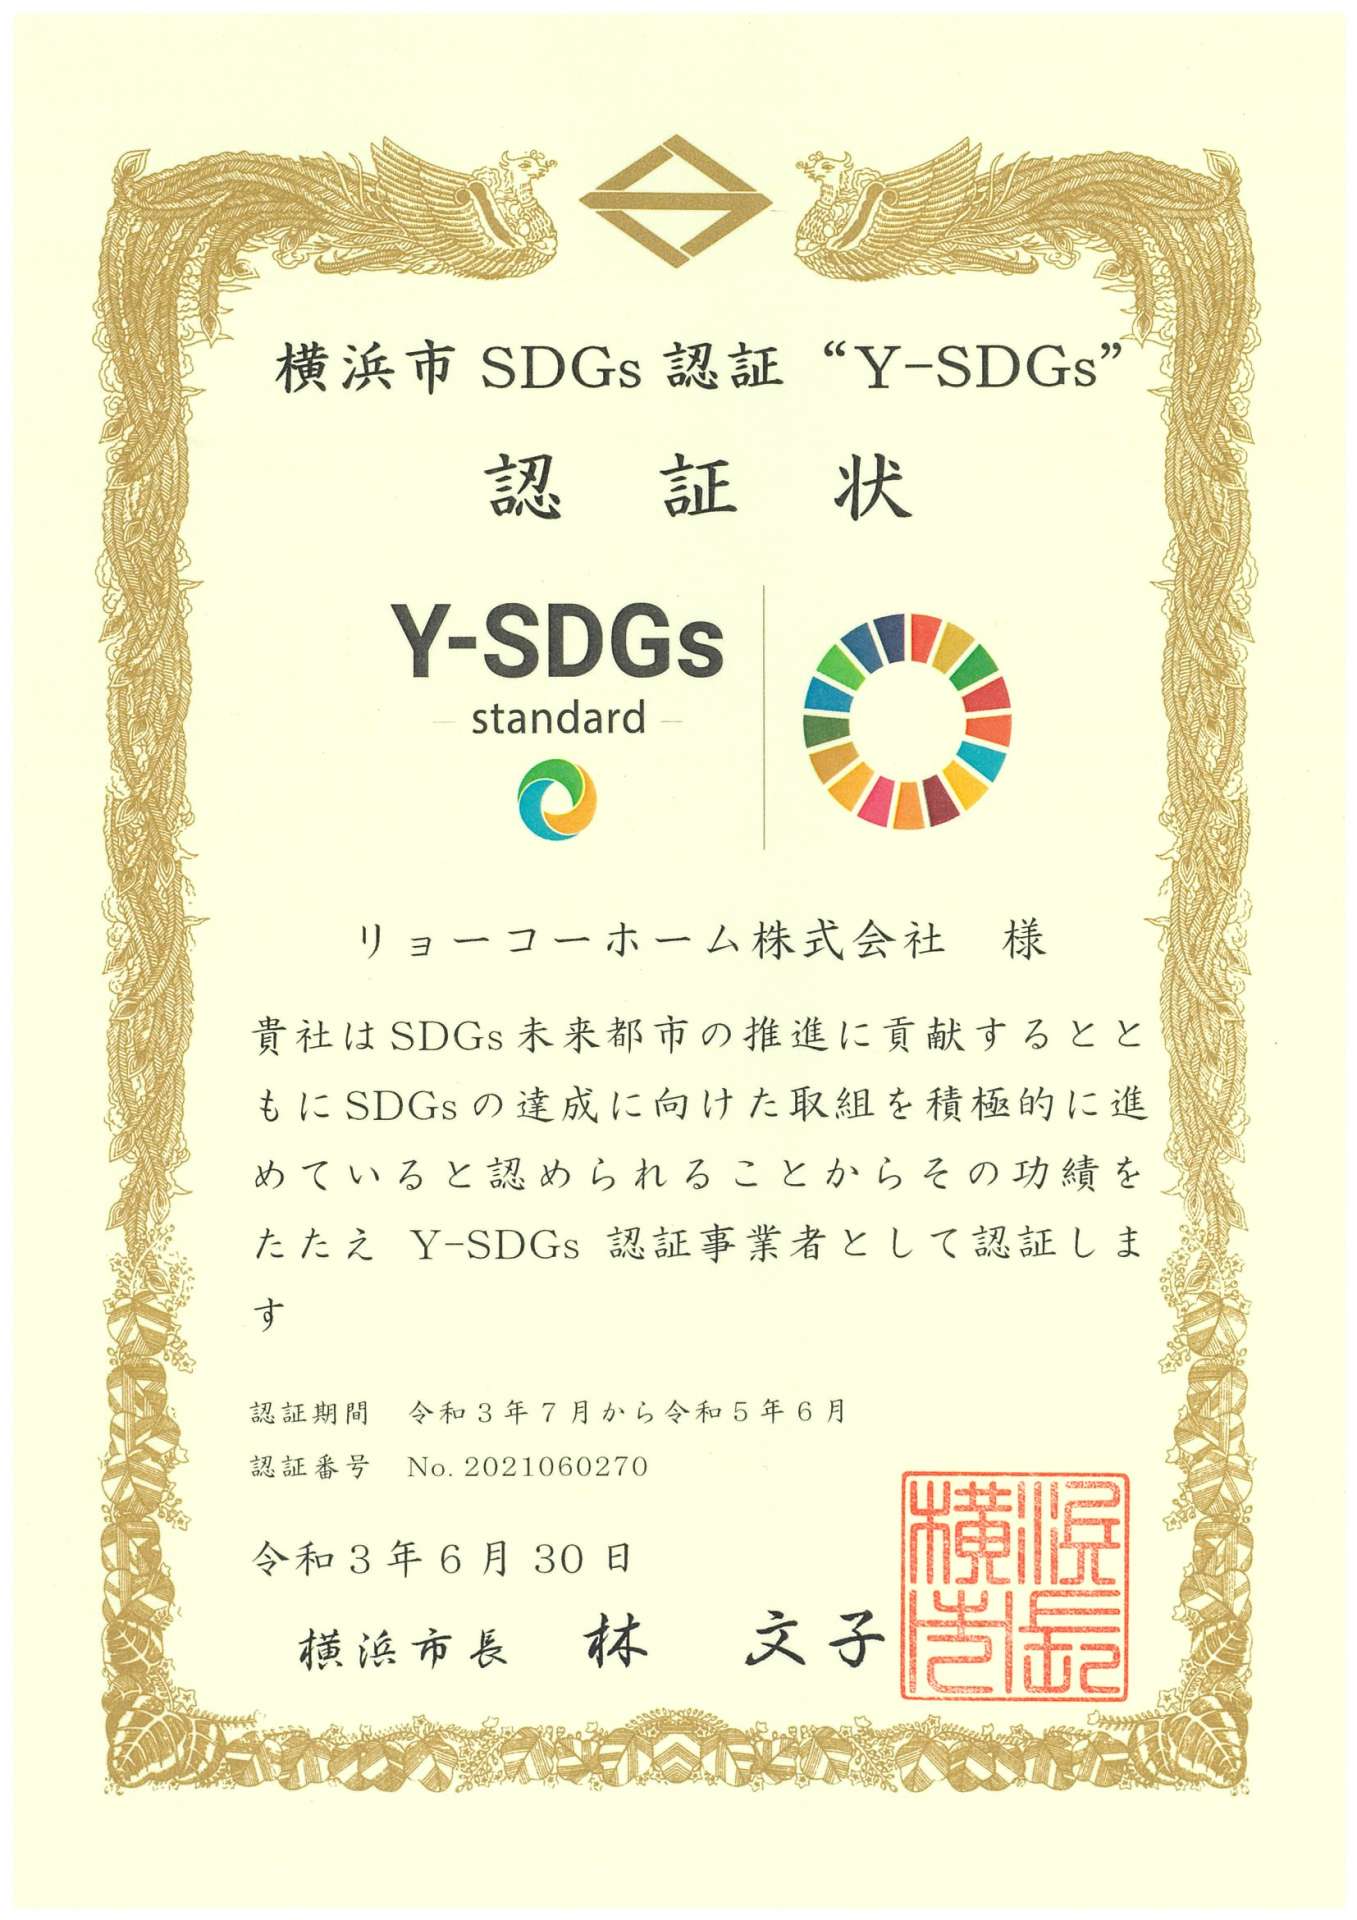 タウンニュース記事【泉区初の「Y-SDGs」認証】